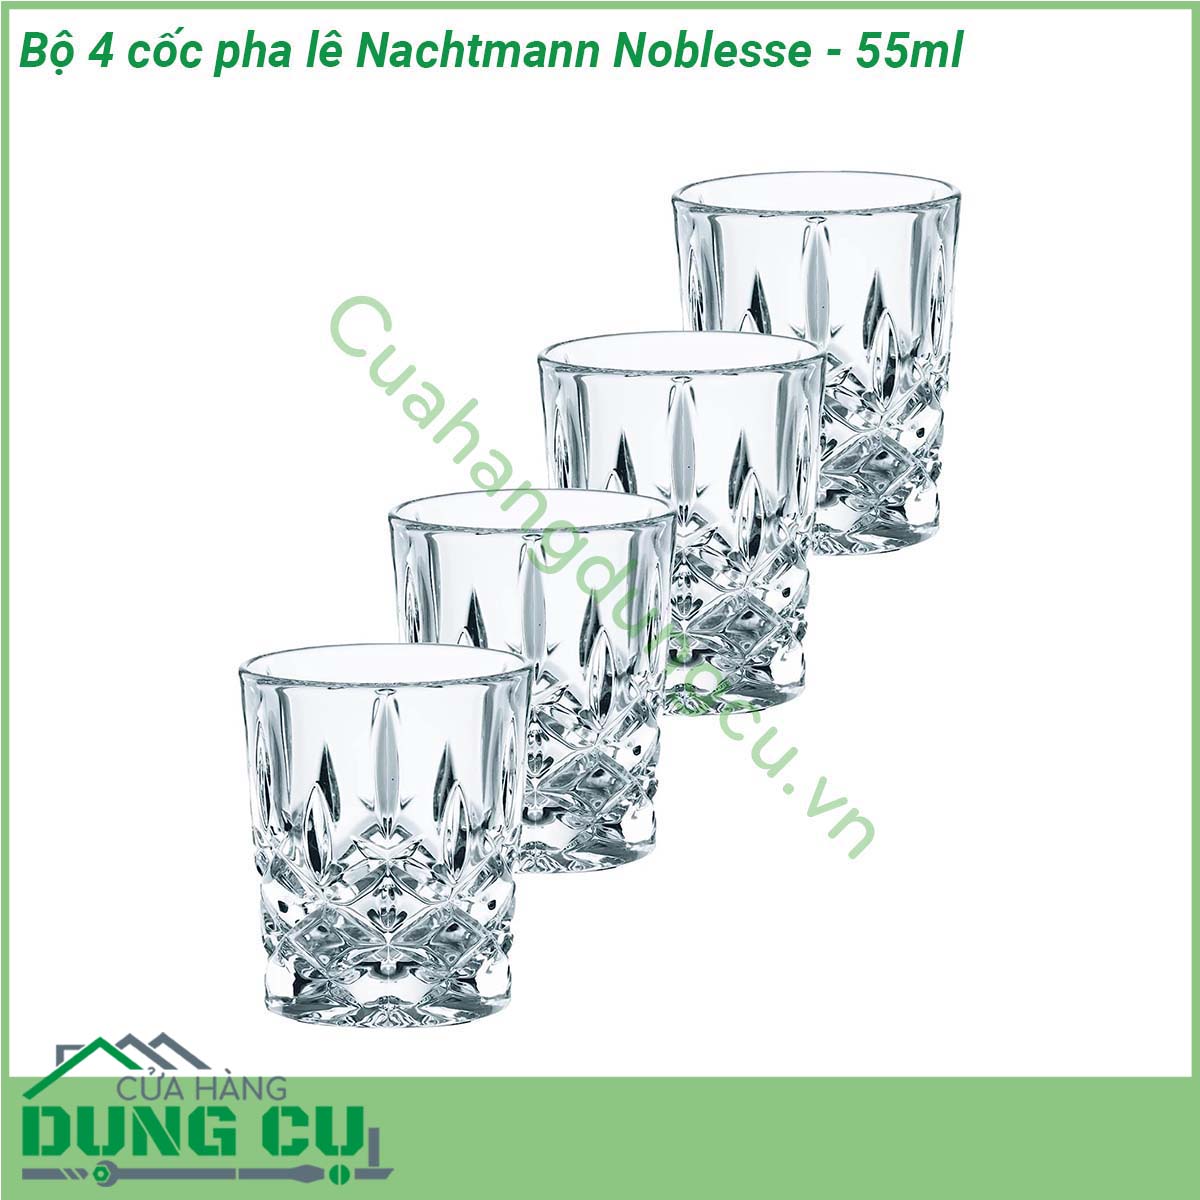 Bộ 4 cốc pha lê Nachtmann Noblesse - 55ml được làm từ chất liệu pha lê không chì sản xuất theo tiêu chuẩn của Đức cẩn thận từ khâu chọn nguyên liệu được nung ở nhiệt độ cao trên 1500oC vì vậy hoàn toàn có thể yên tâm về độ trong độ bền và độ an toàn không chứa chì an toàn cho sức khỏe người tiêu dùng